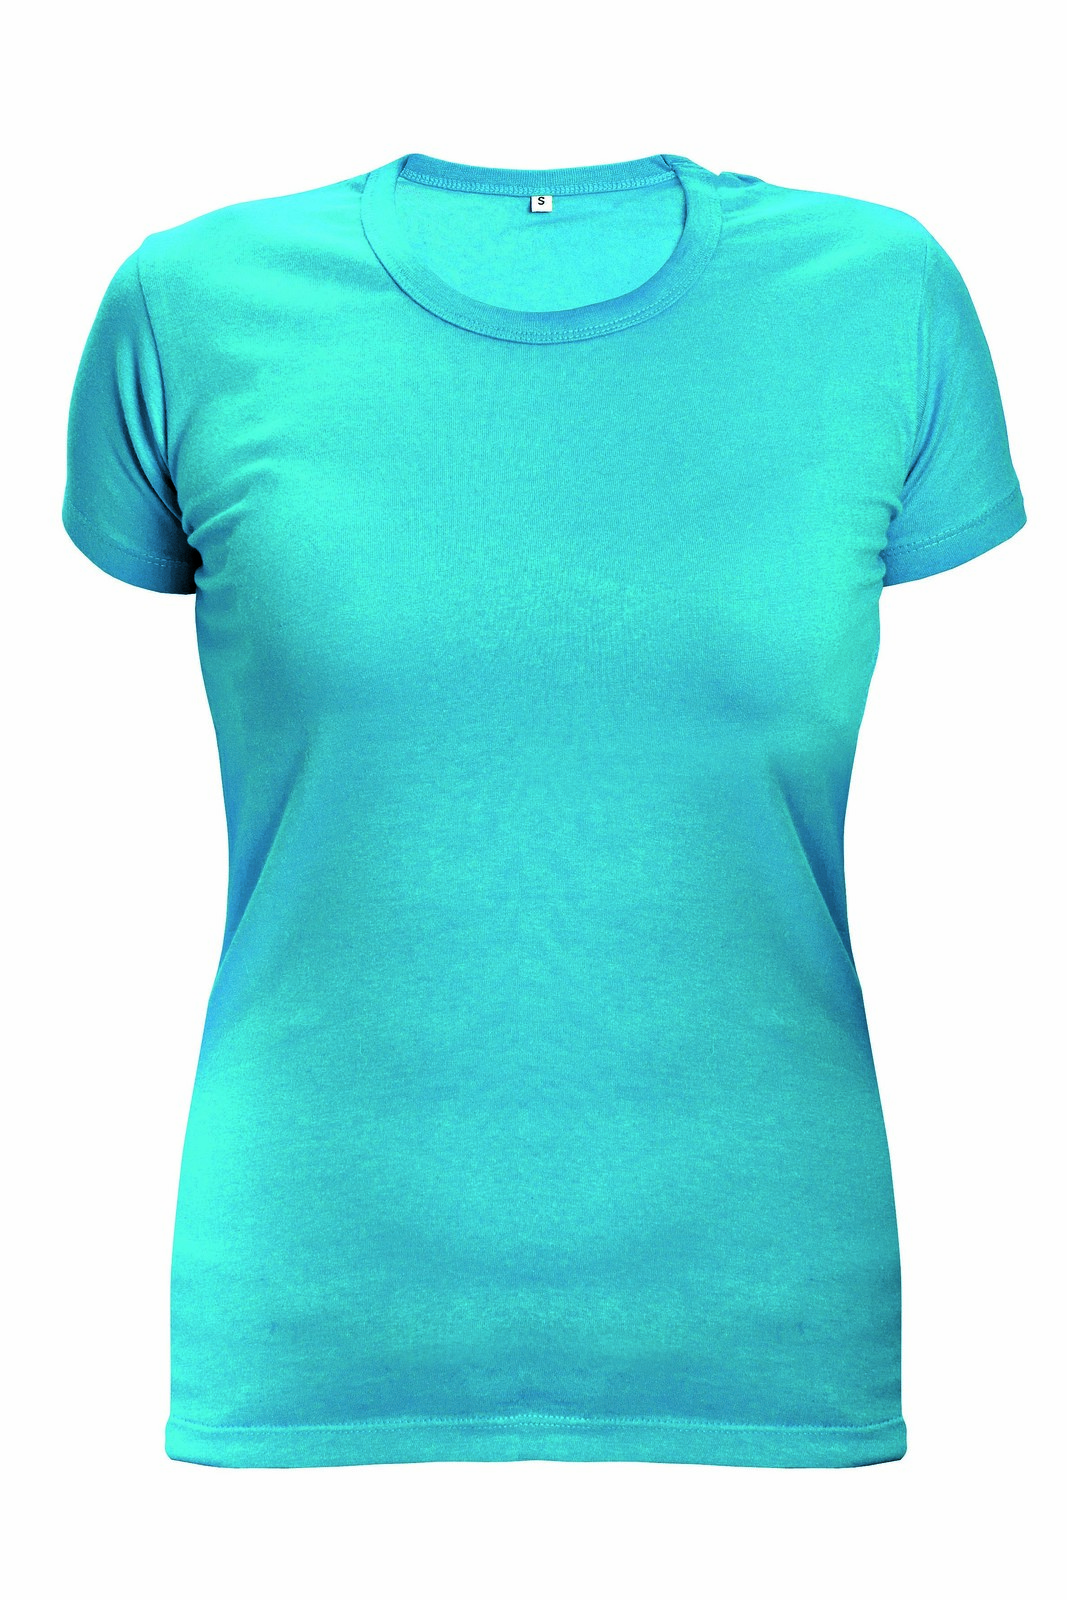 Dámske tričko s krátkym rukávom Surma Lady - veľkosť: XS, farba: tyrkysová